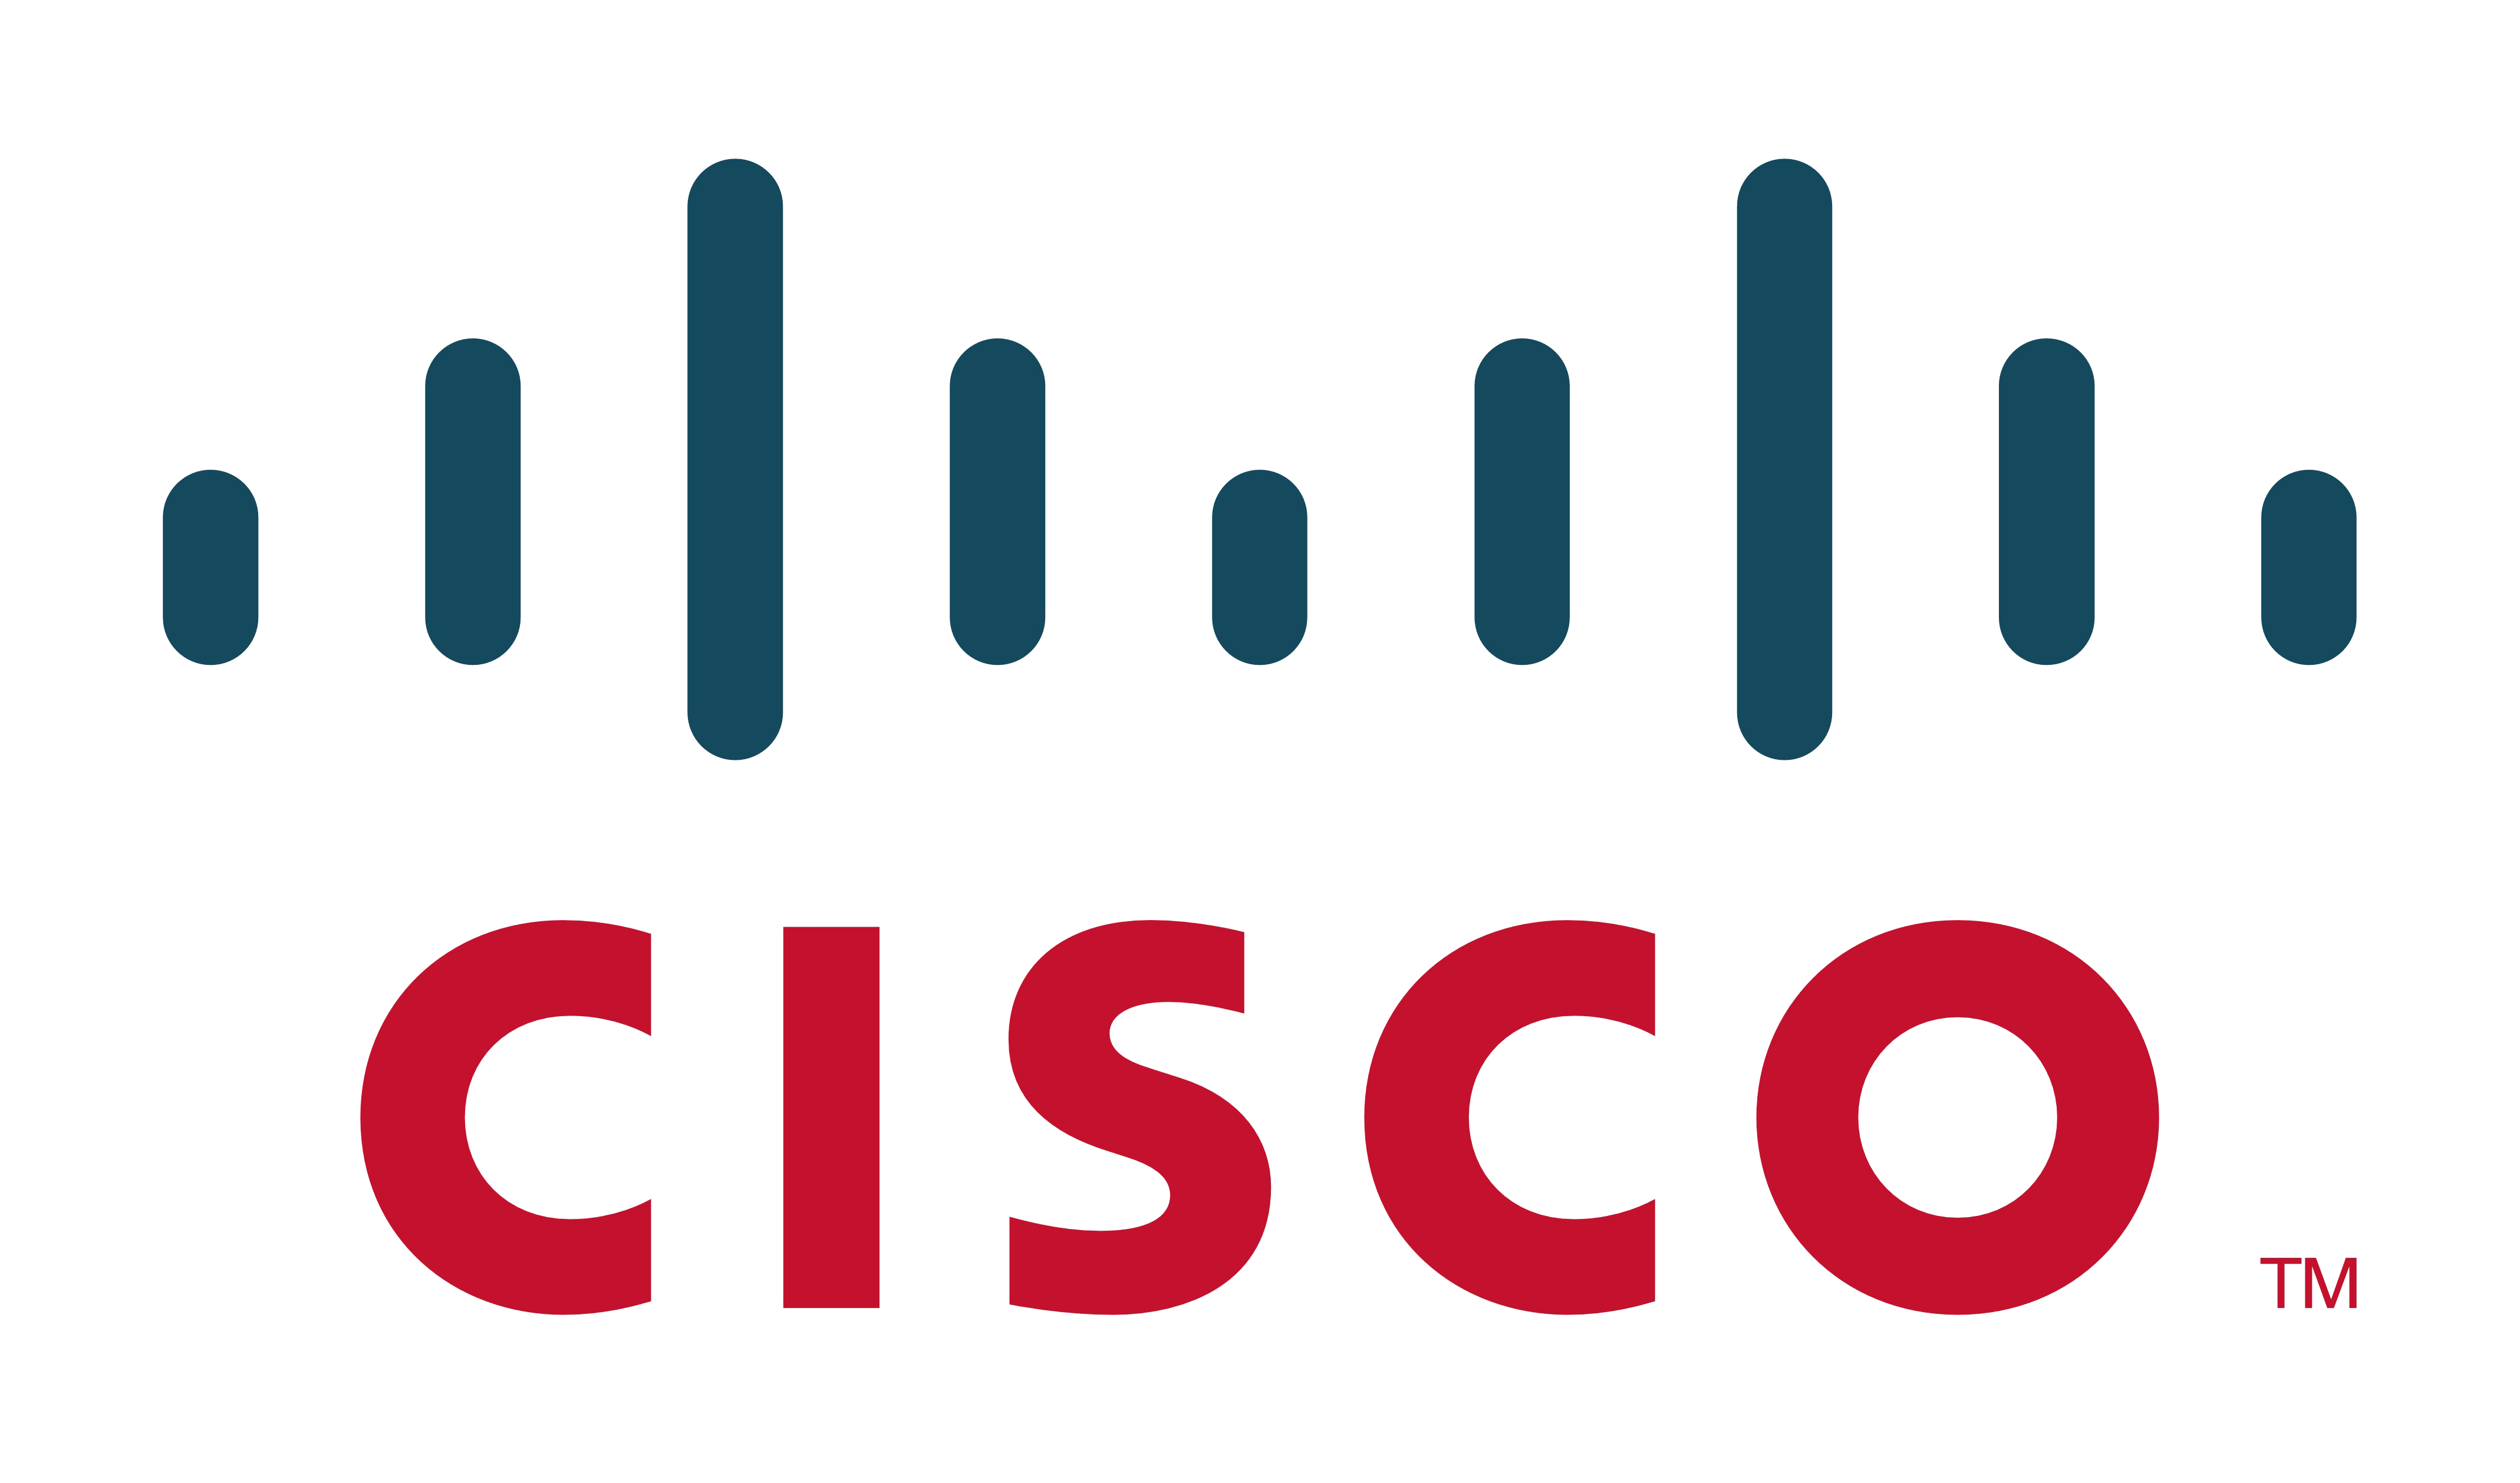 cisco brand vector logo